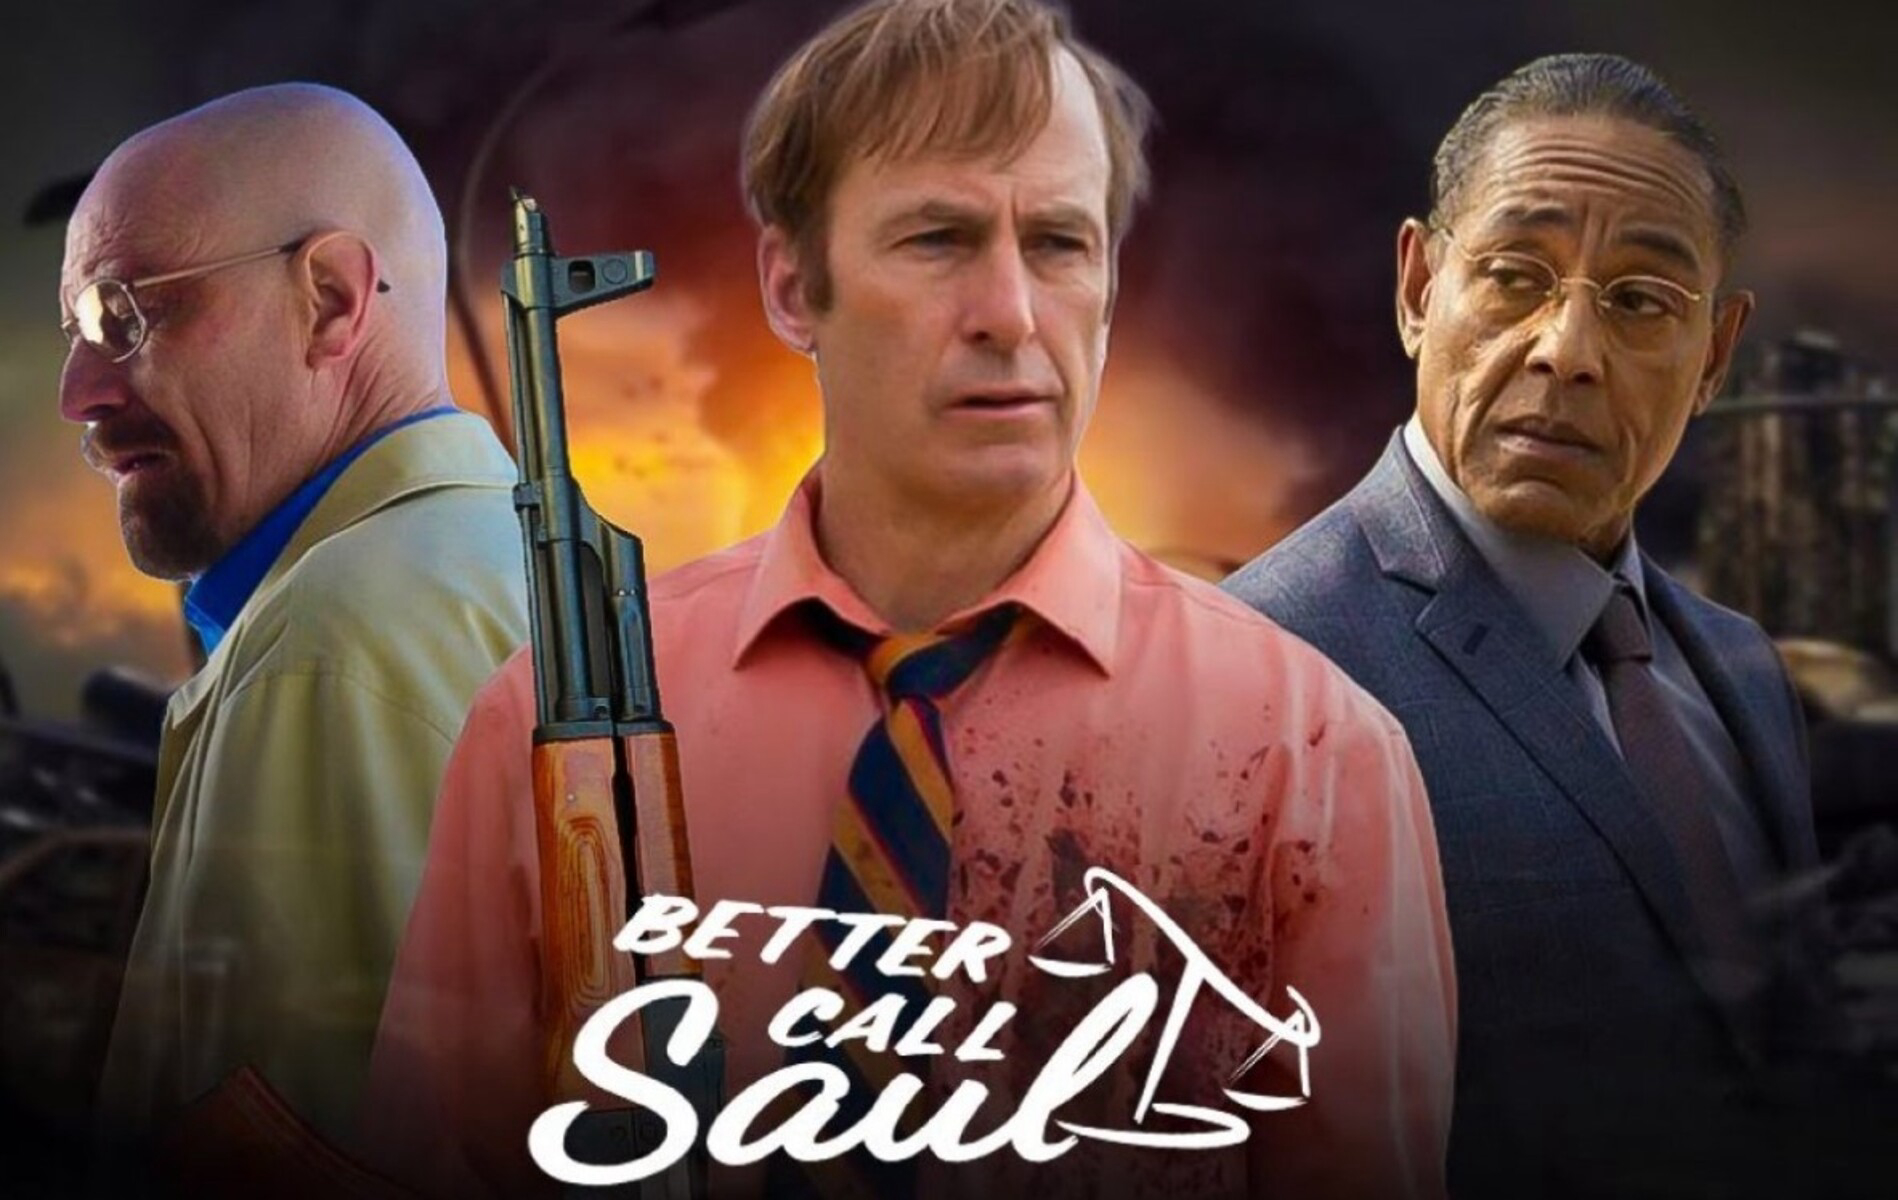 Poster Phim Hãy Gọi Cho Saul Phần 6 (Better Call Saul Season 6)